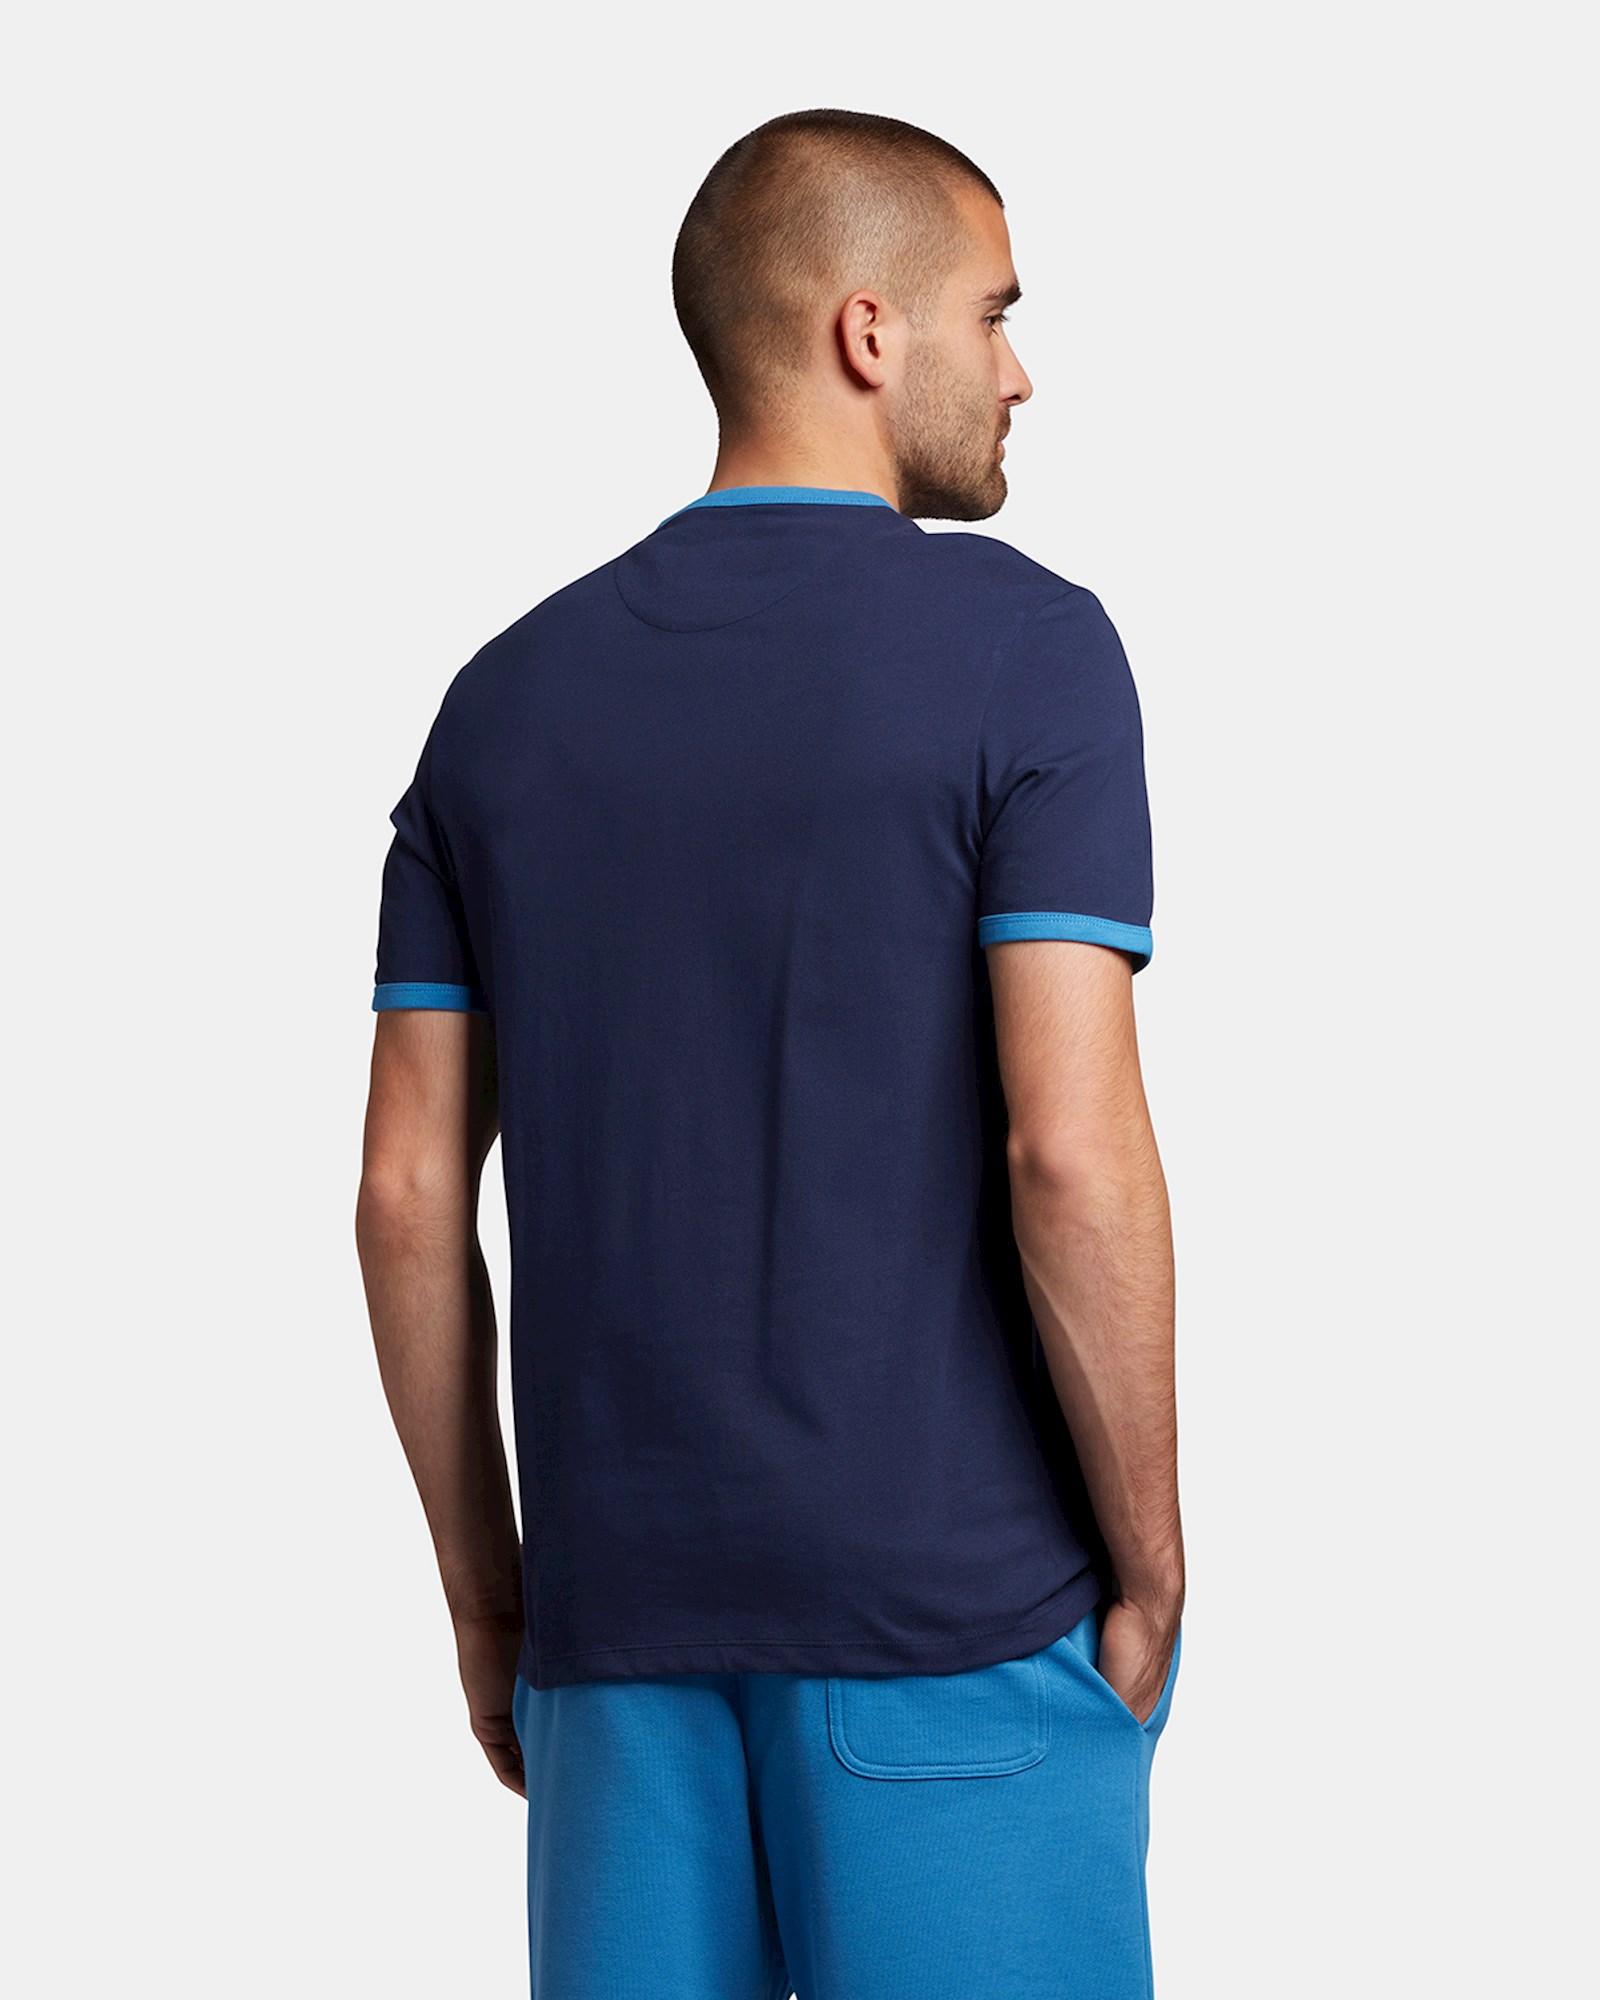 Lyle & Scott T-shirt blauw voor heren - nuyts meerhout